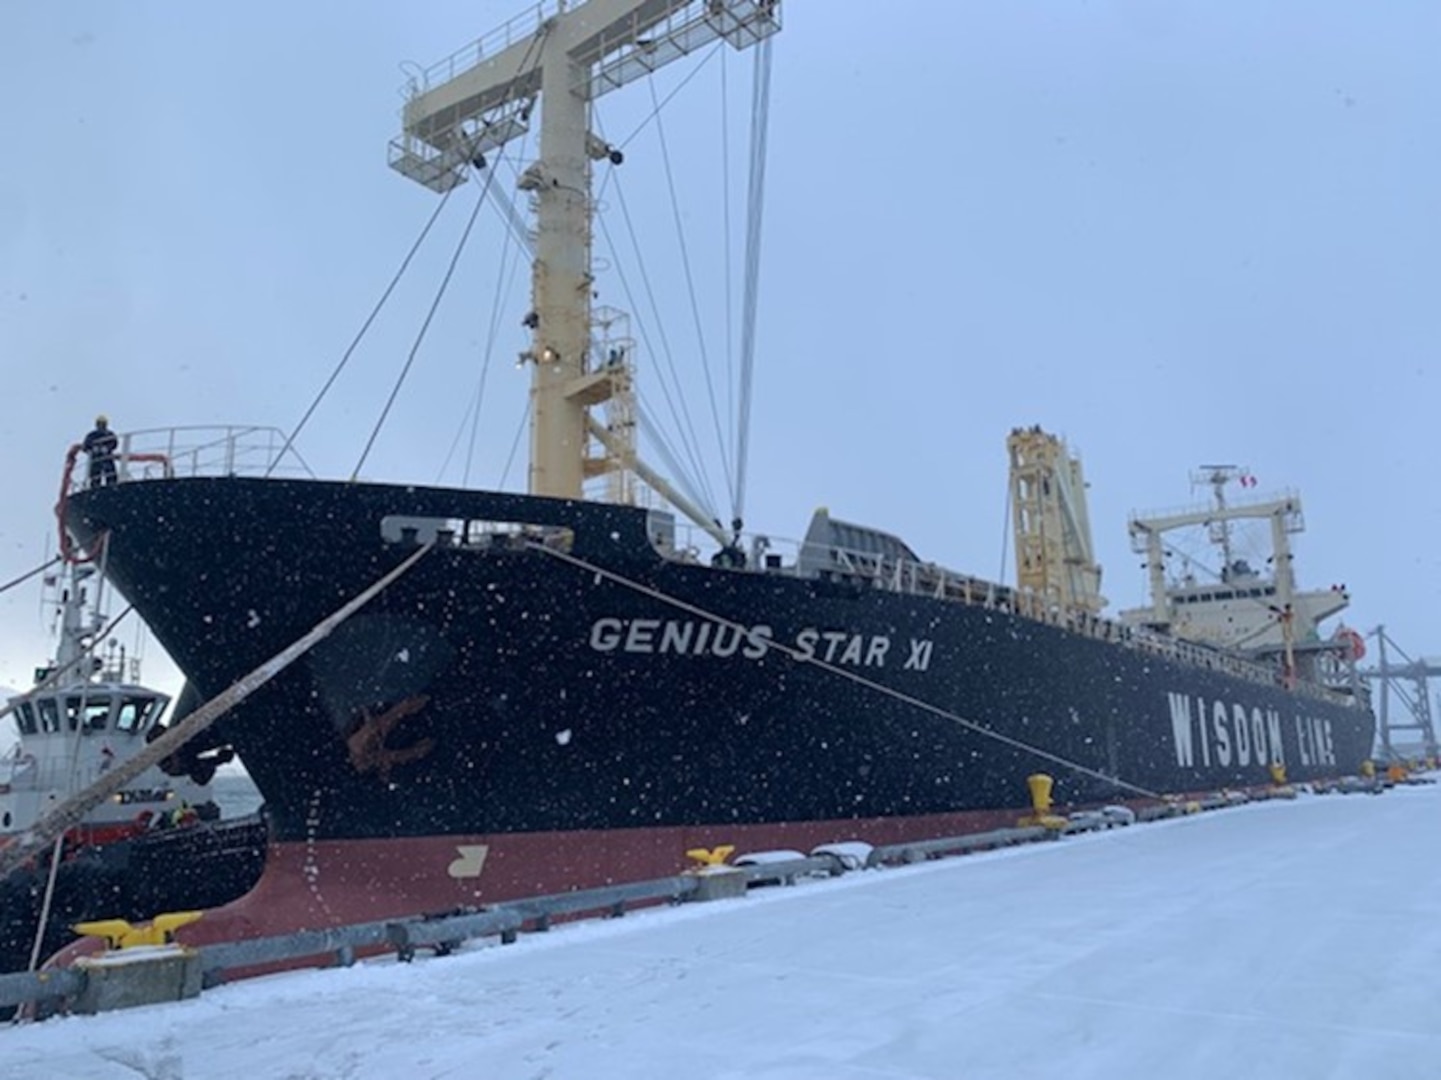 M/V Genius Star XI Dutch Harbor, Alaska > Kustwachtnieuws van de Verenigde Staten > Persberichten